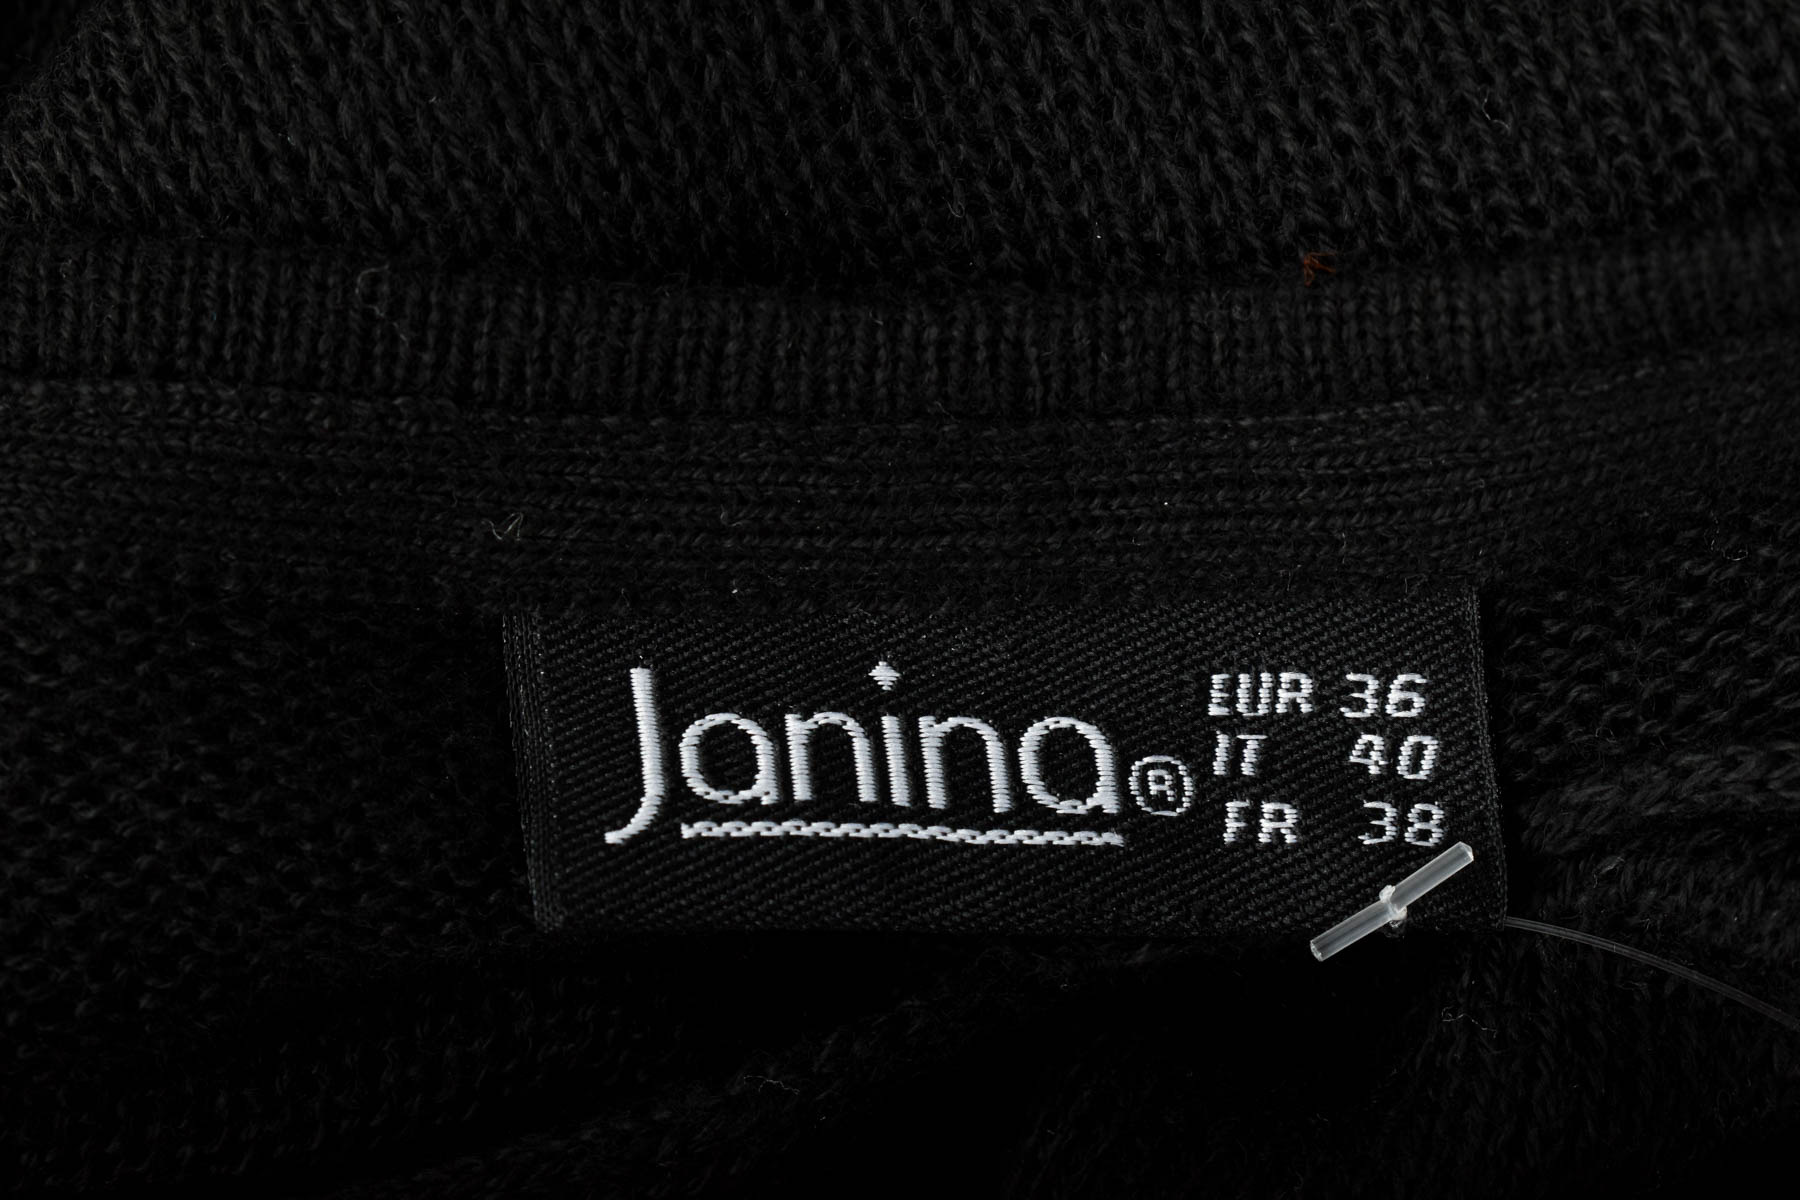 Sweter damski - Janina - 2